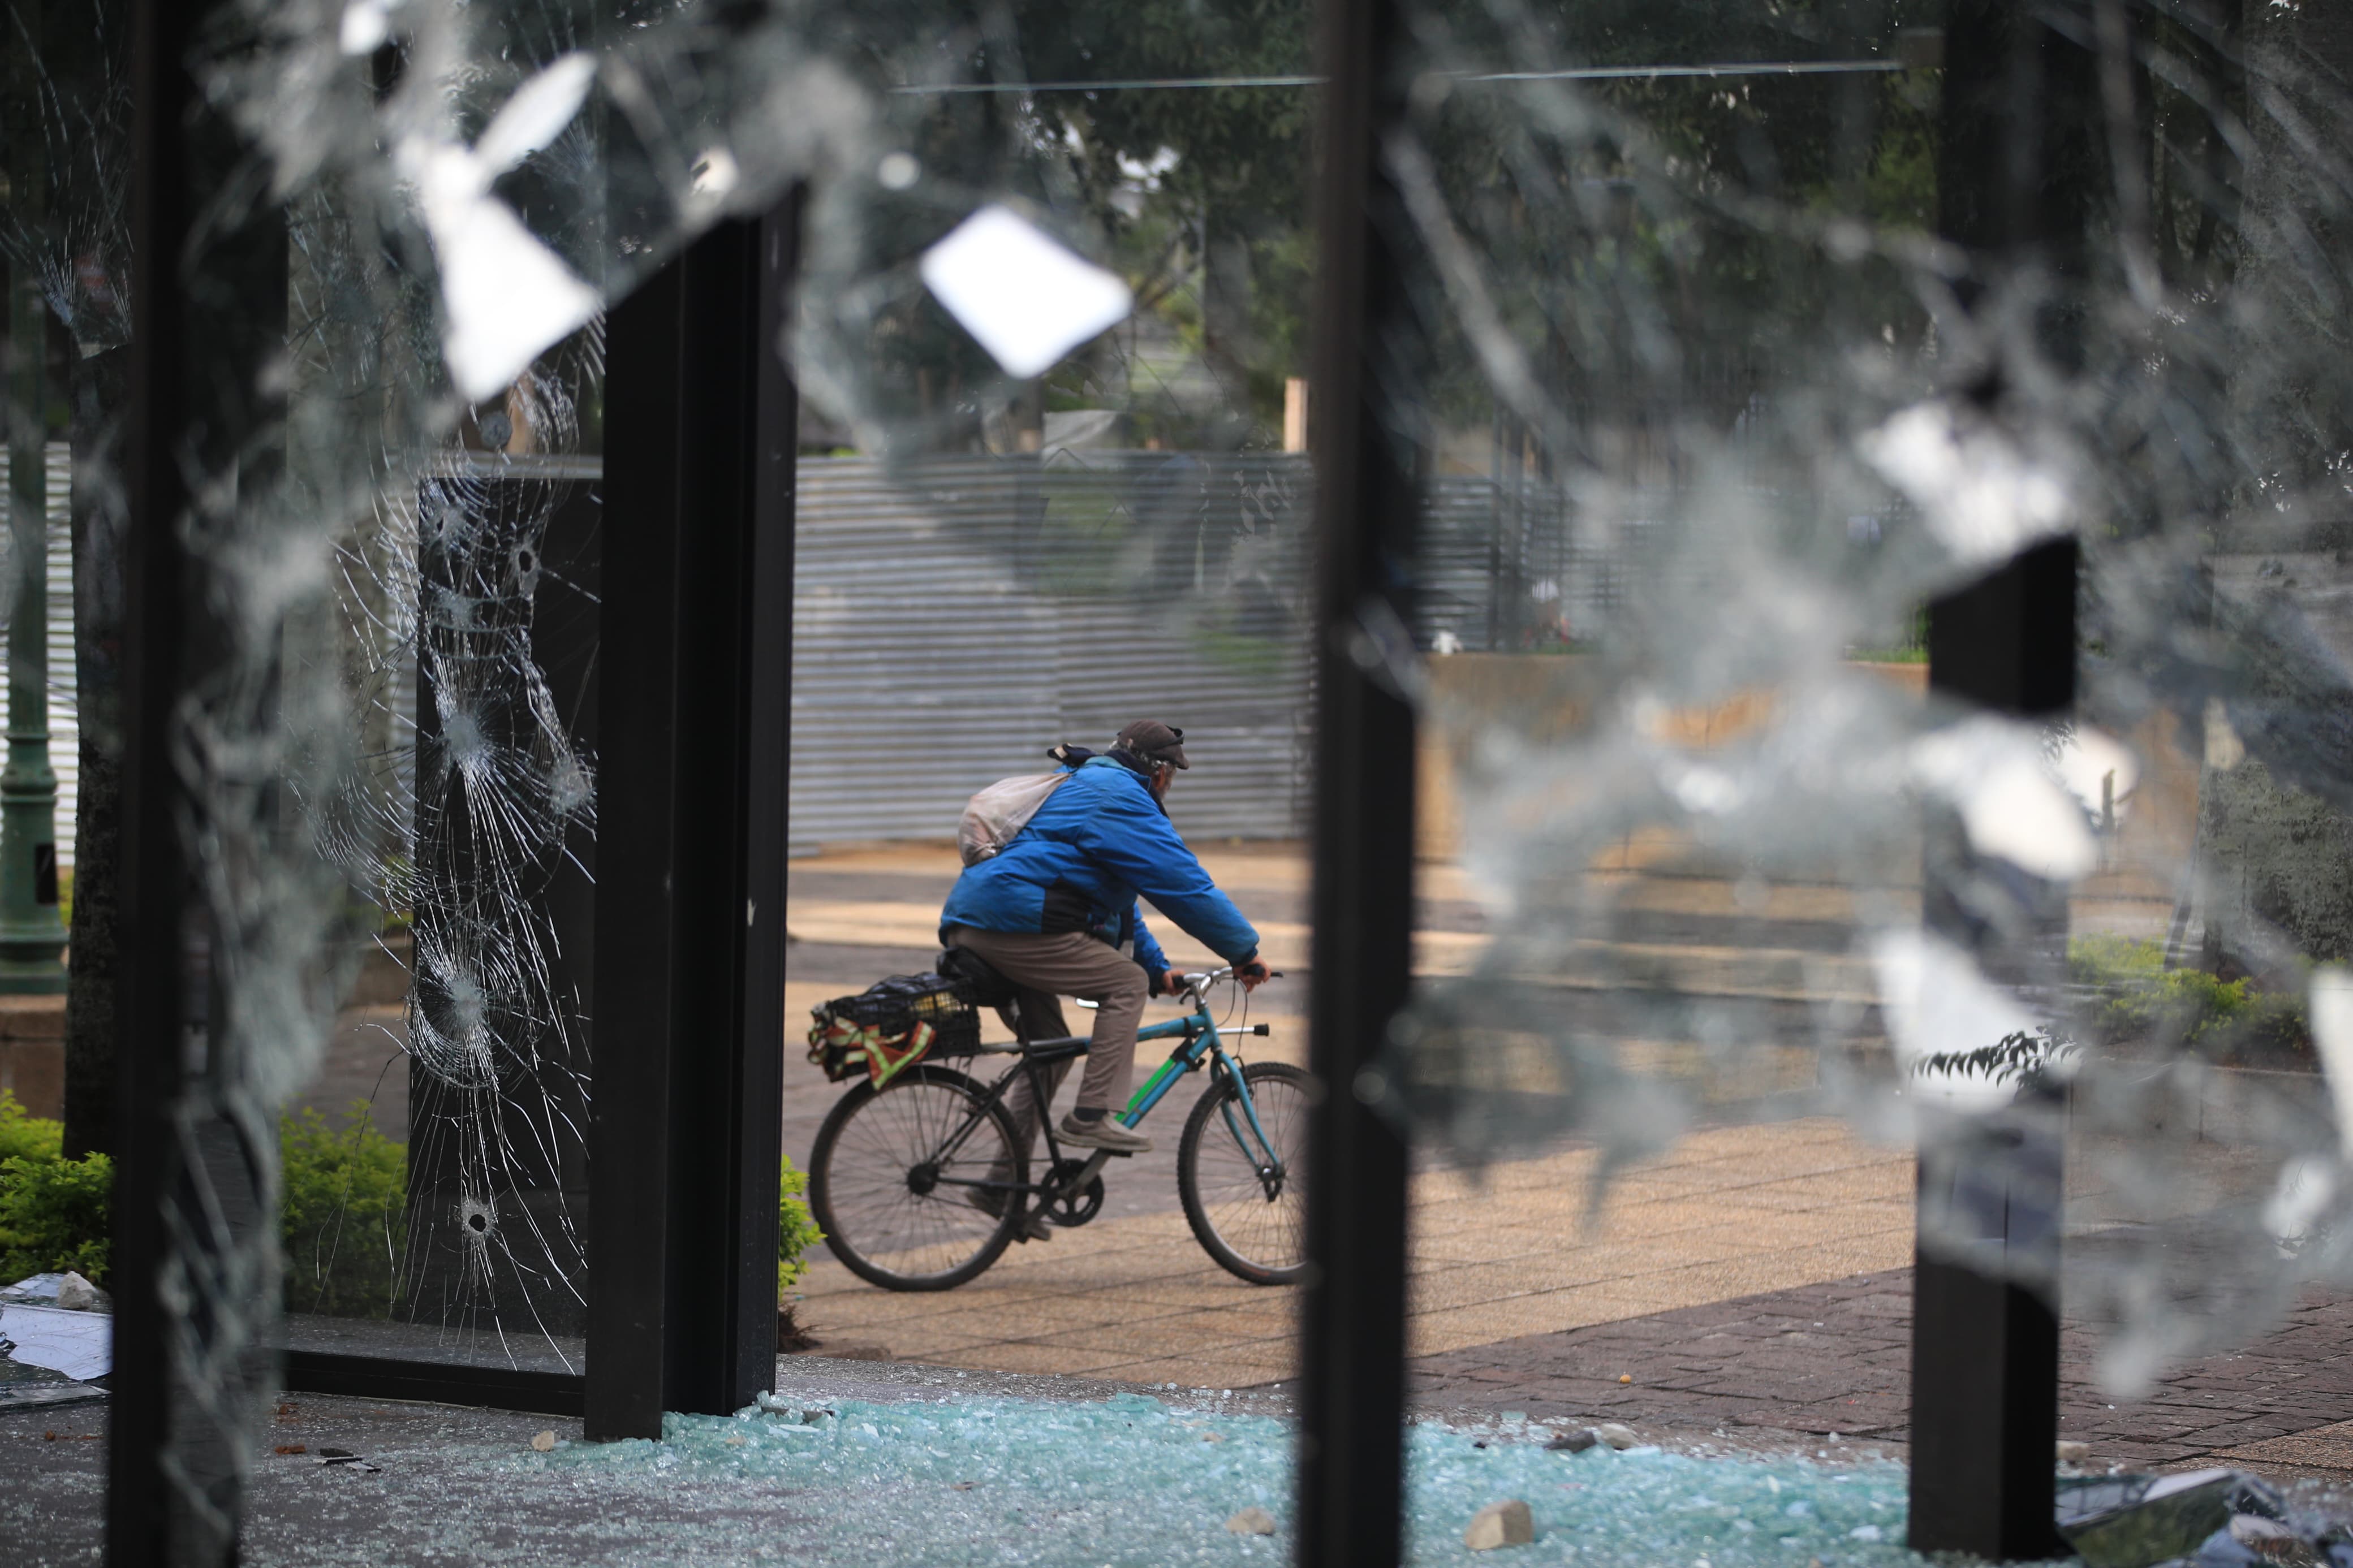 Parte de los daños que ocasionaron supuestos manifestantes en el Portal de la Sexta durante disturbios. (Foto Prensa Libre: Carlos Hernández)